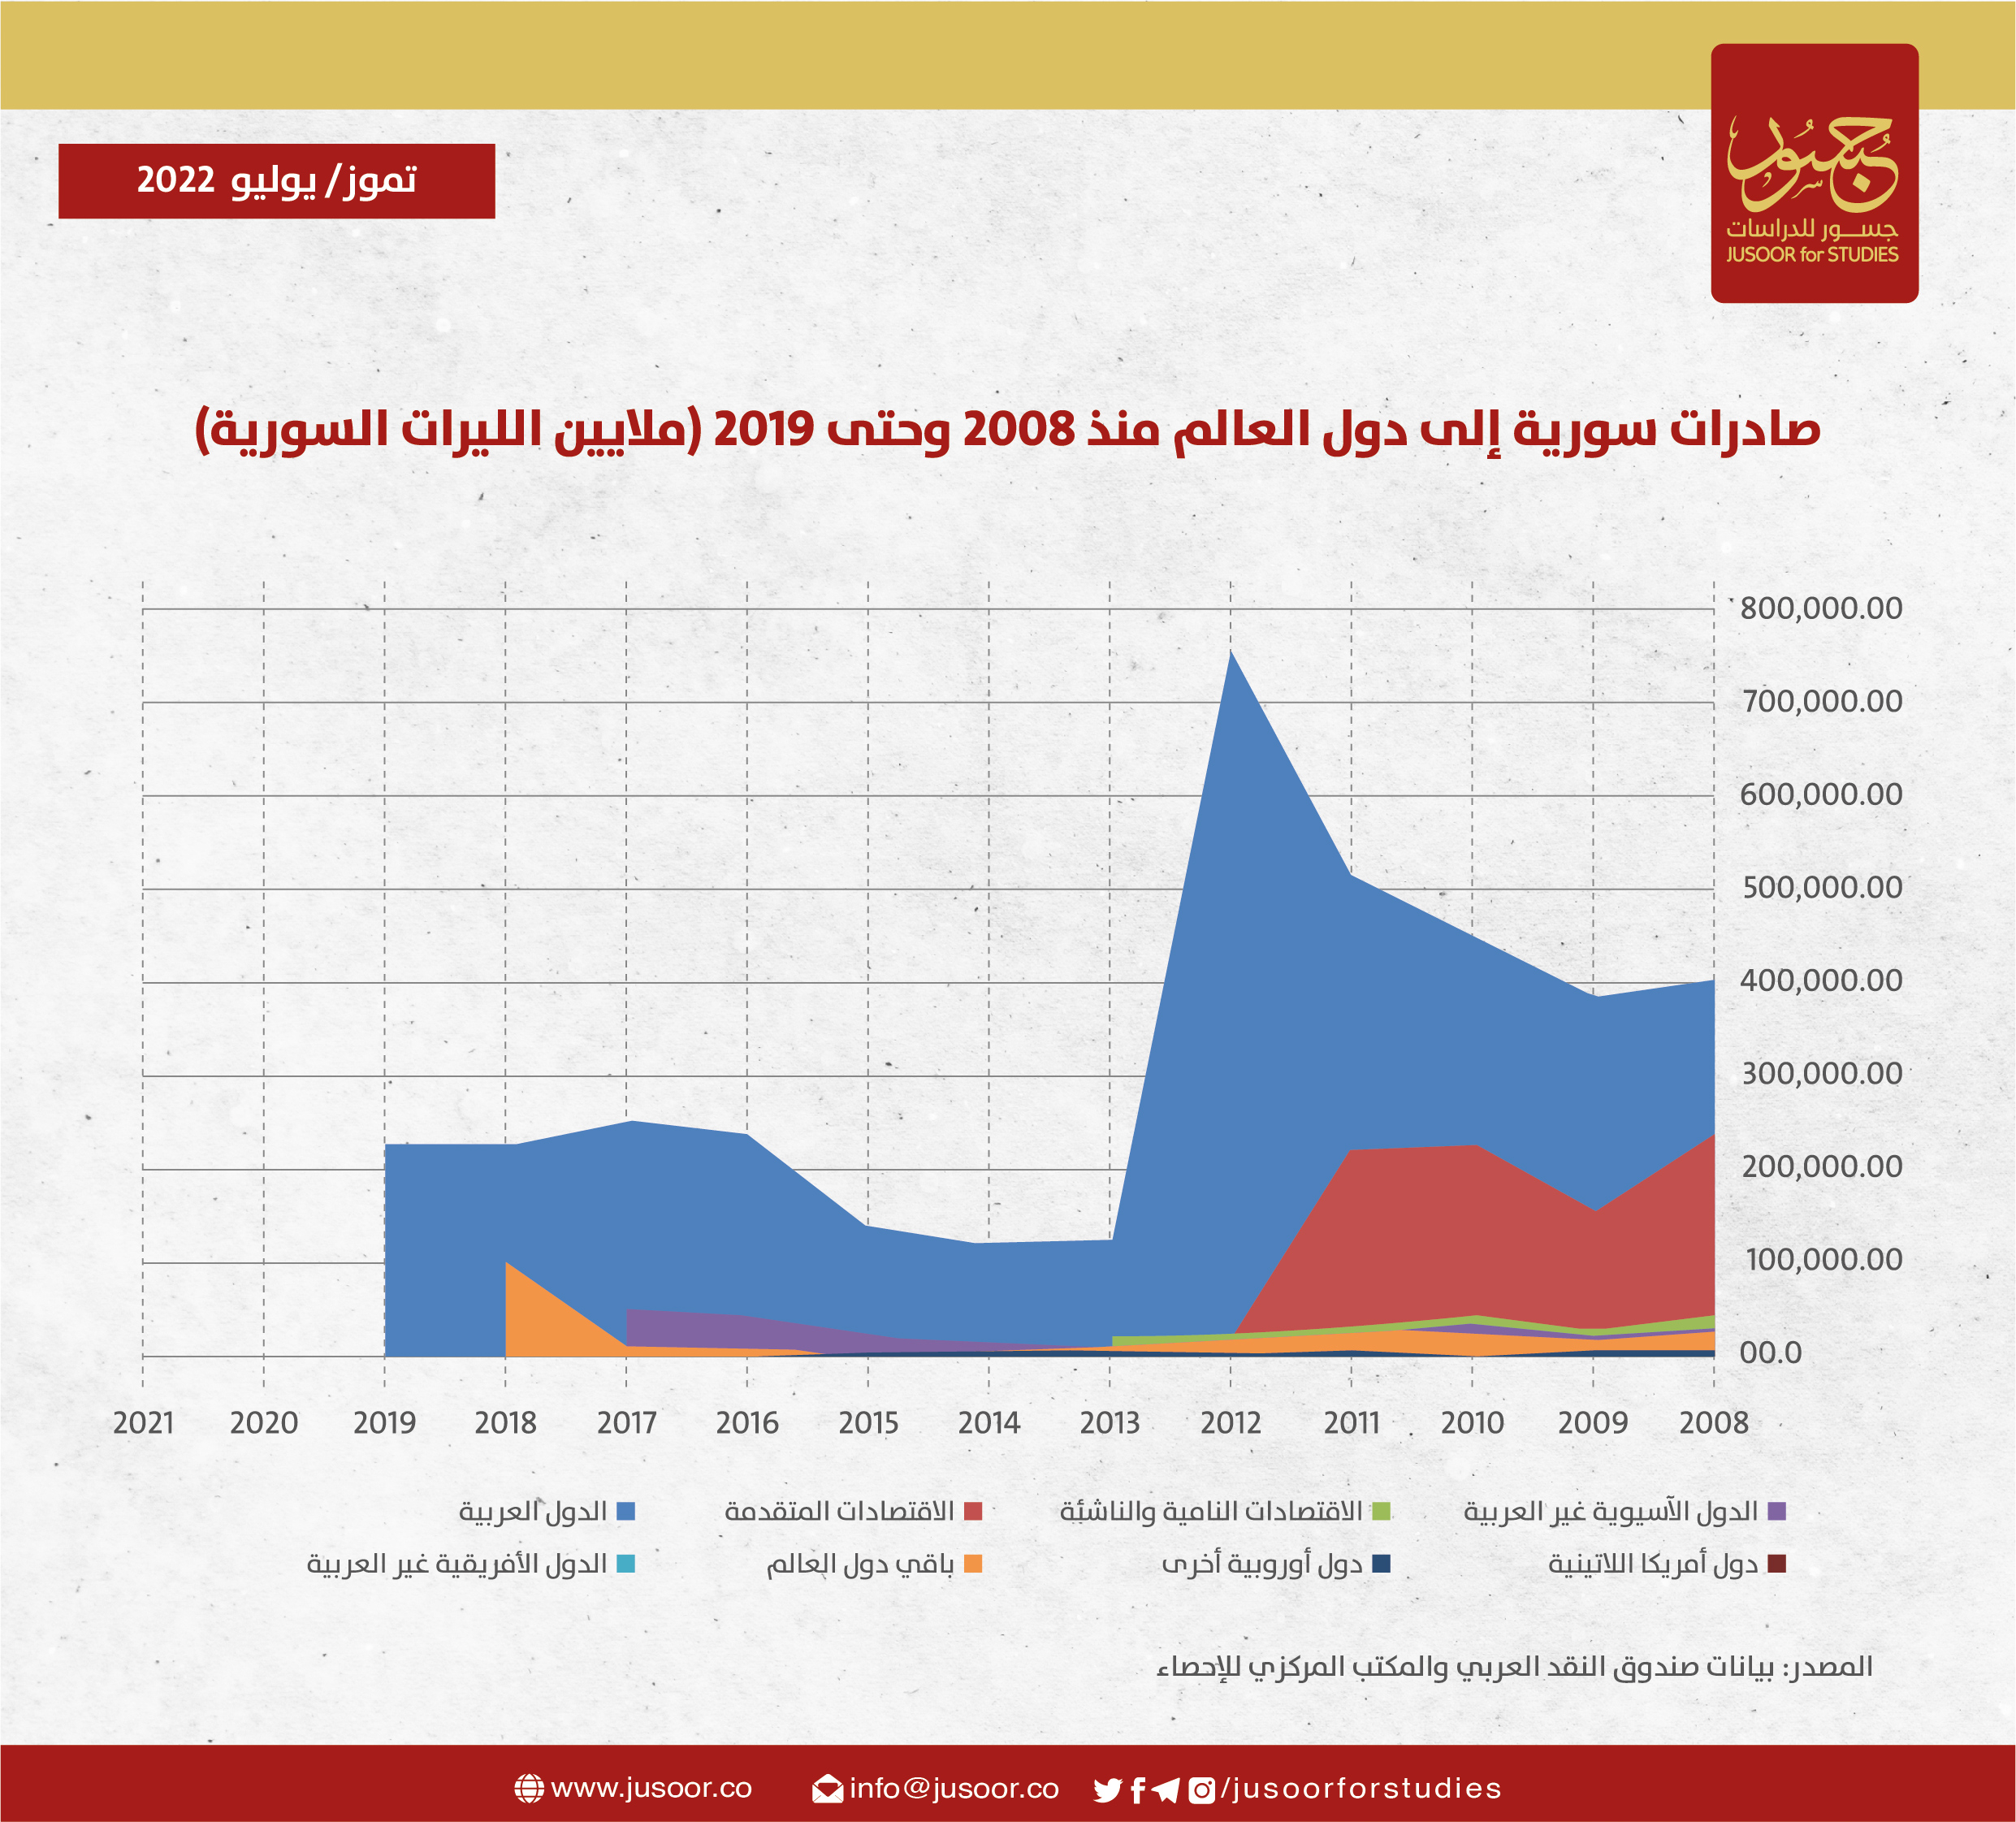 صادرات سورية إلى دول العالم منذ 2008 وحتى 2019 (ملايثين الليرات السورية)